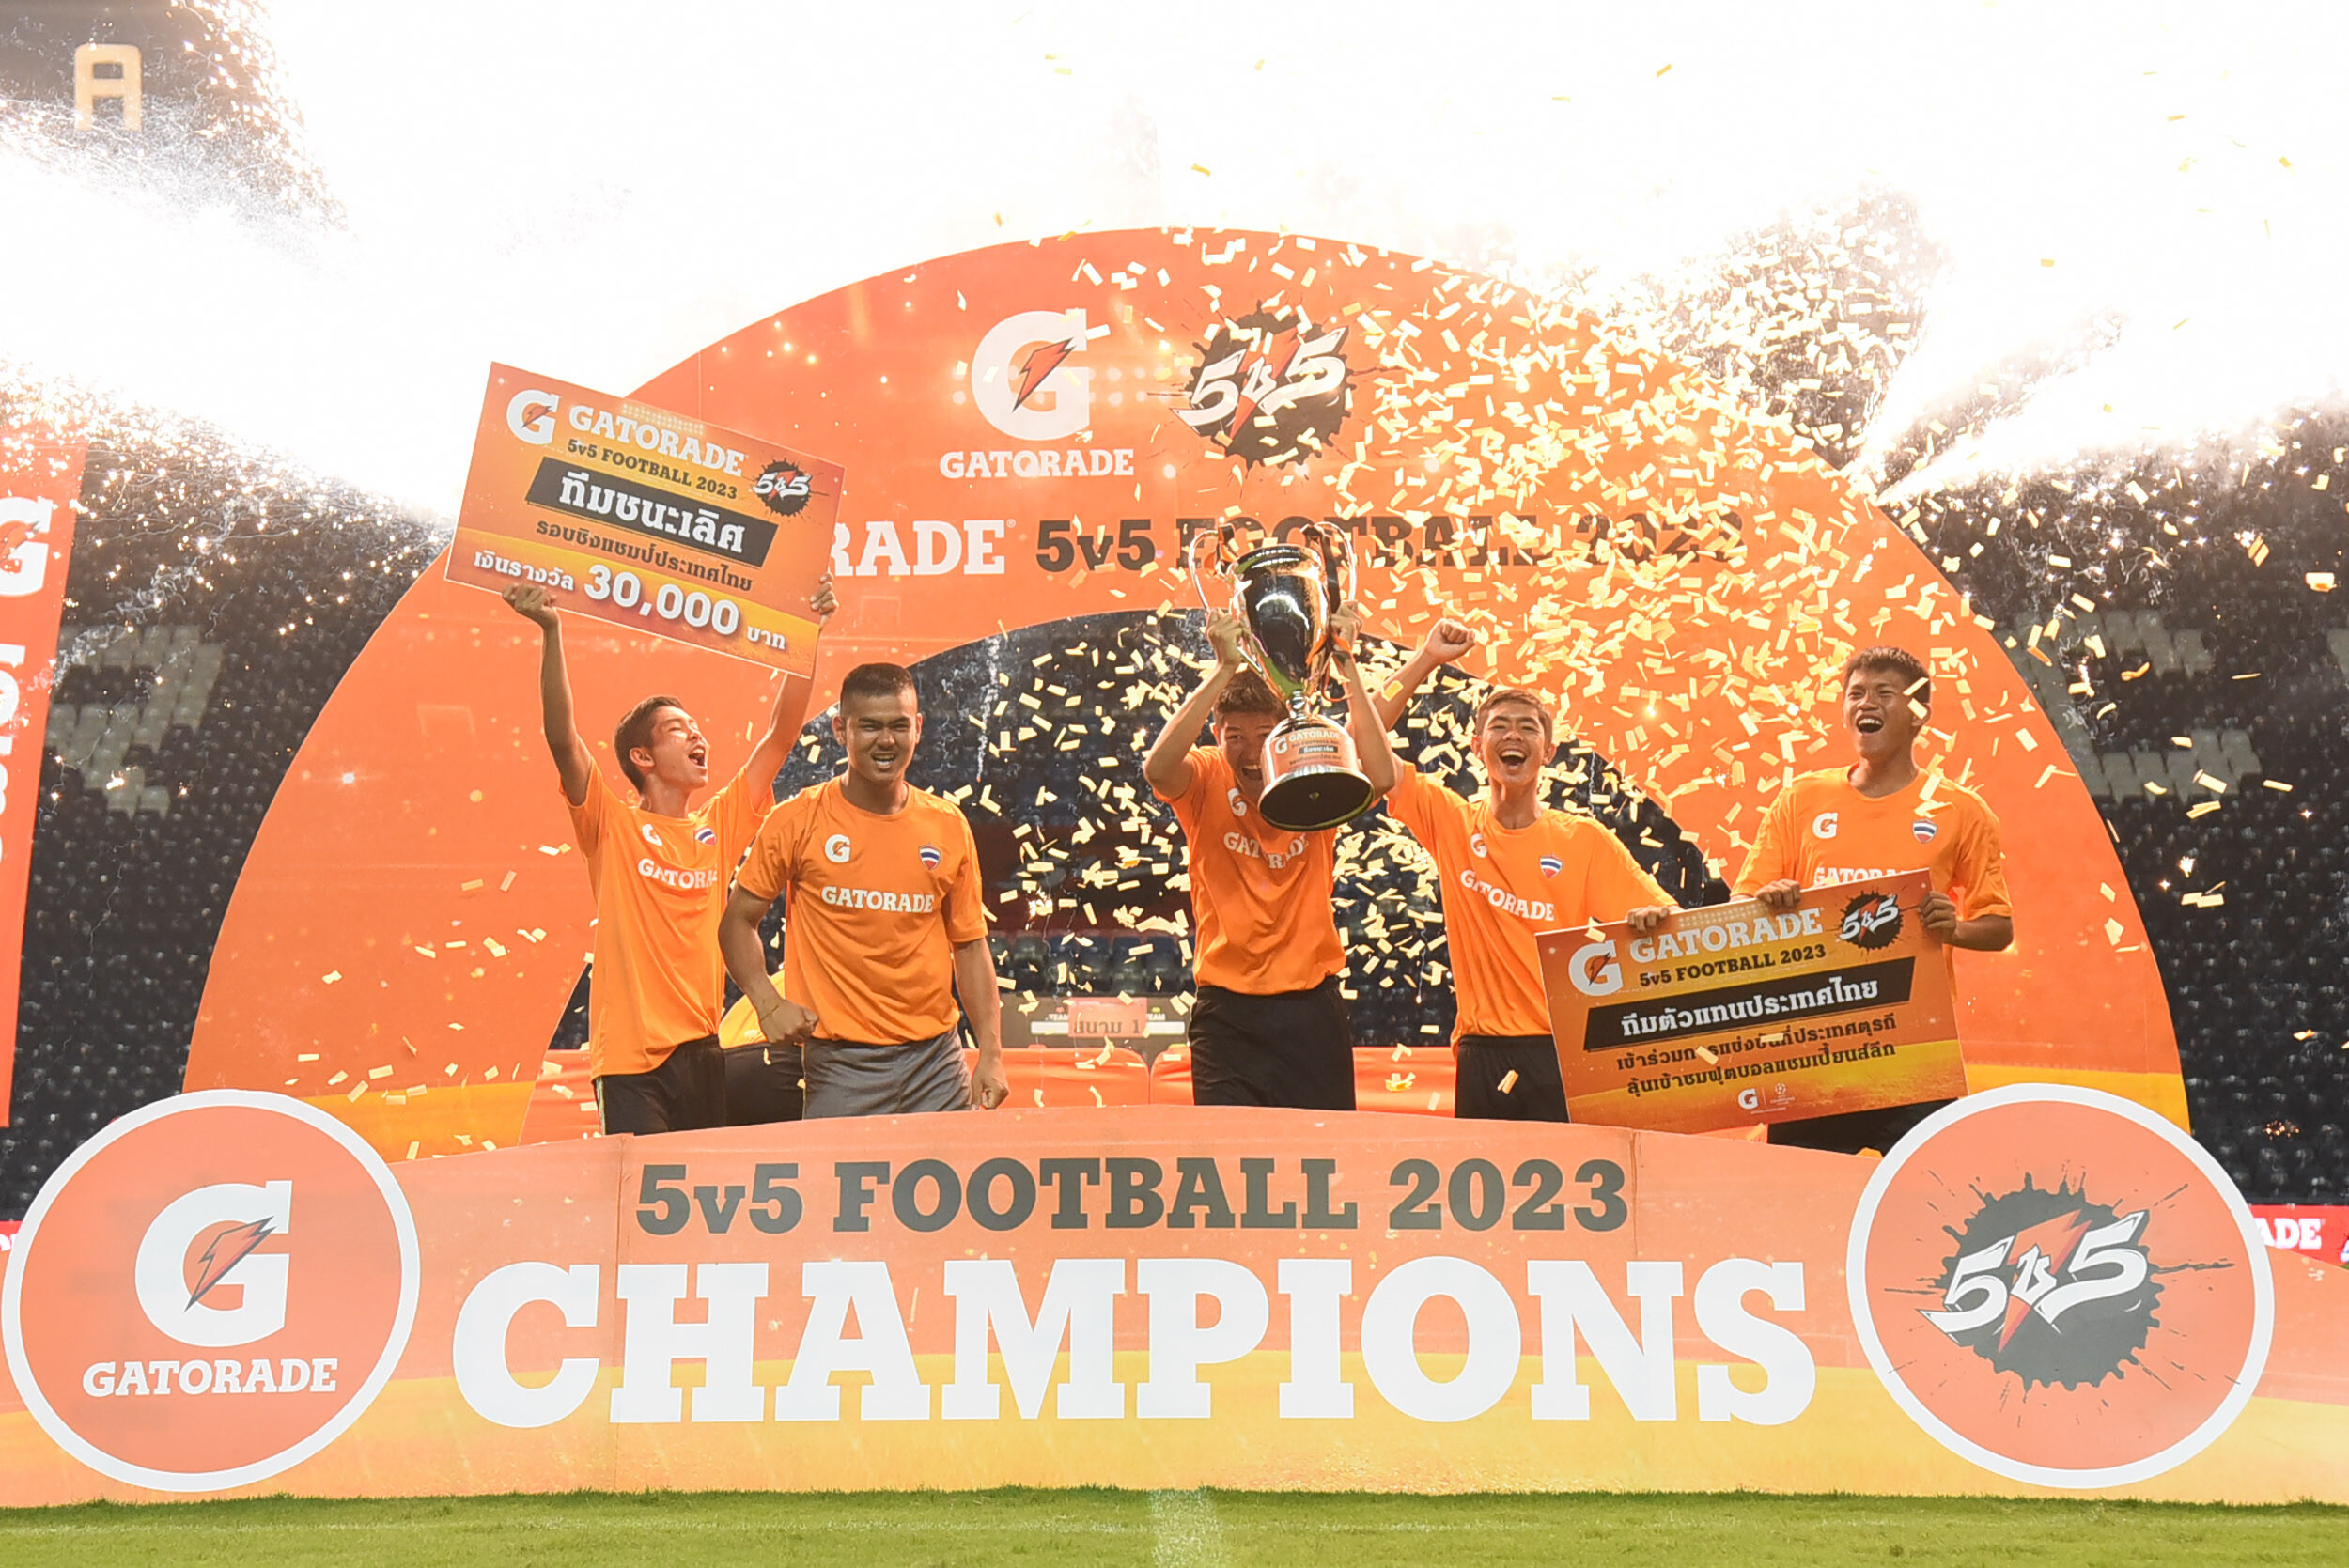 "เกเตอเรด" แสดงความยินดีกับ POWER SNCK สุดยอดทีมนักเตะเยาวชนไทย คว้าชัย! ในศึกฟุตบอล "Gatorade 5v5 Football 2023" รอบชิงชนะเลิศ